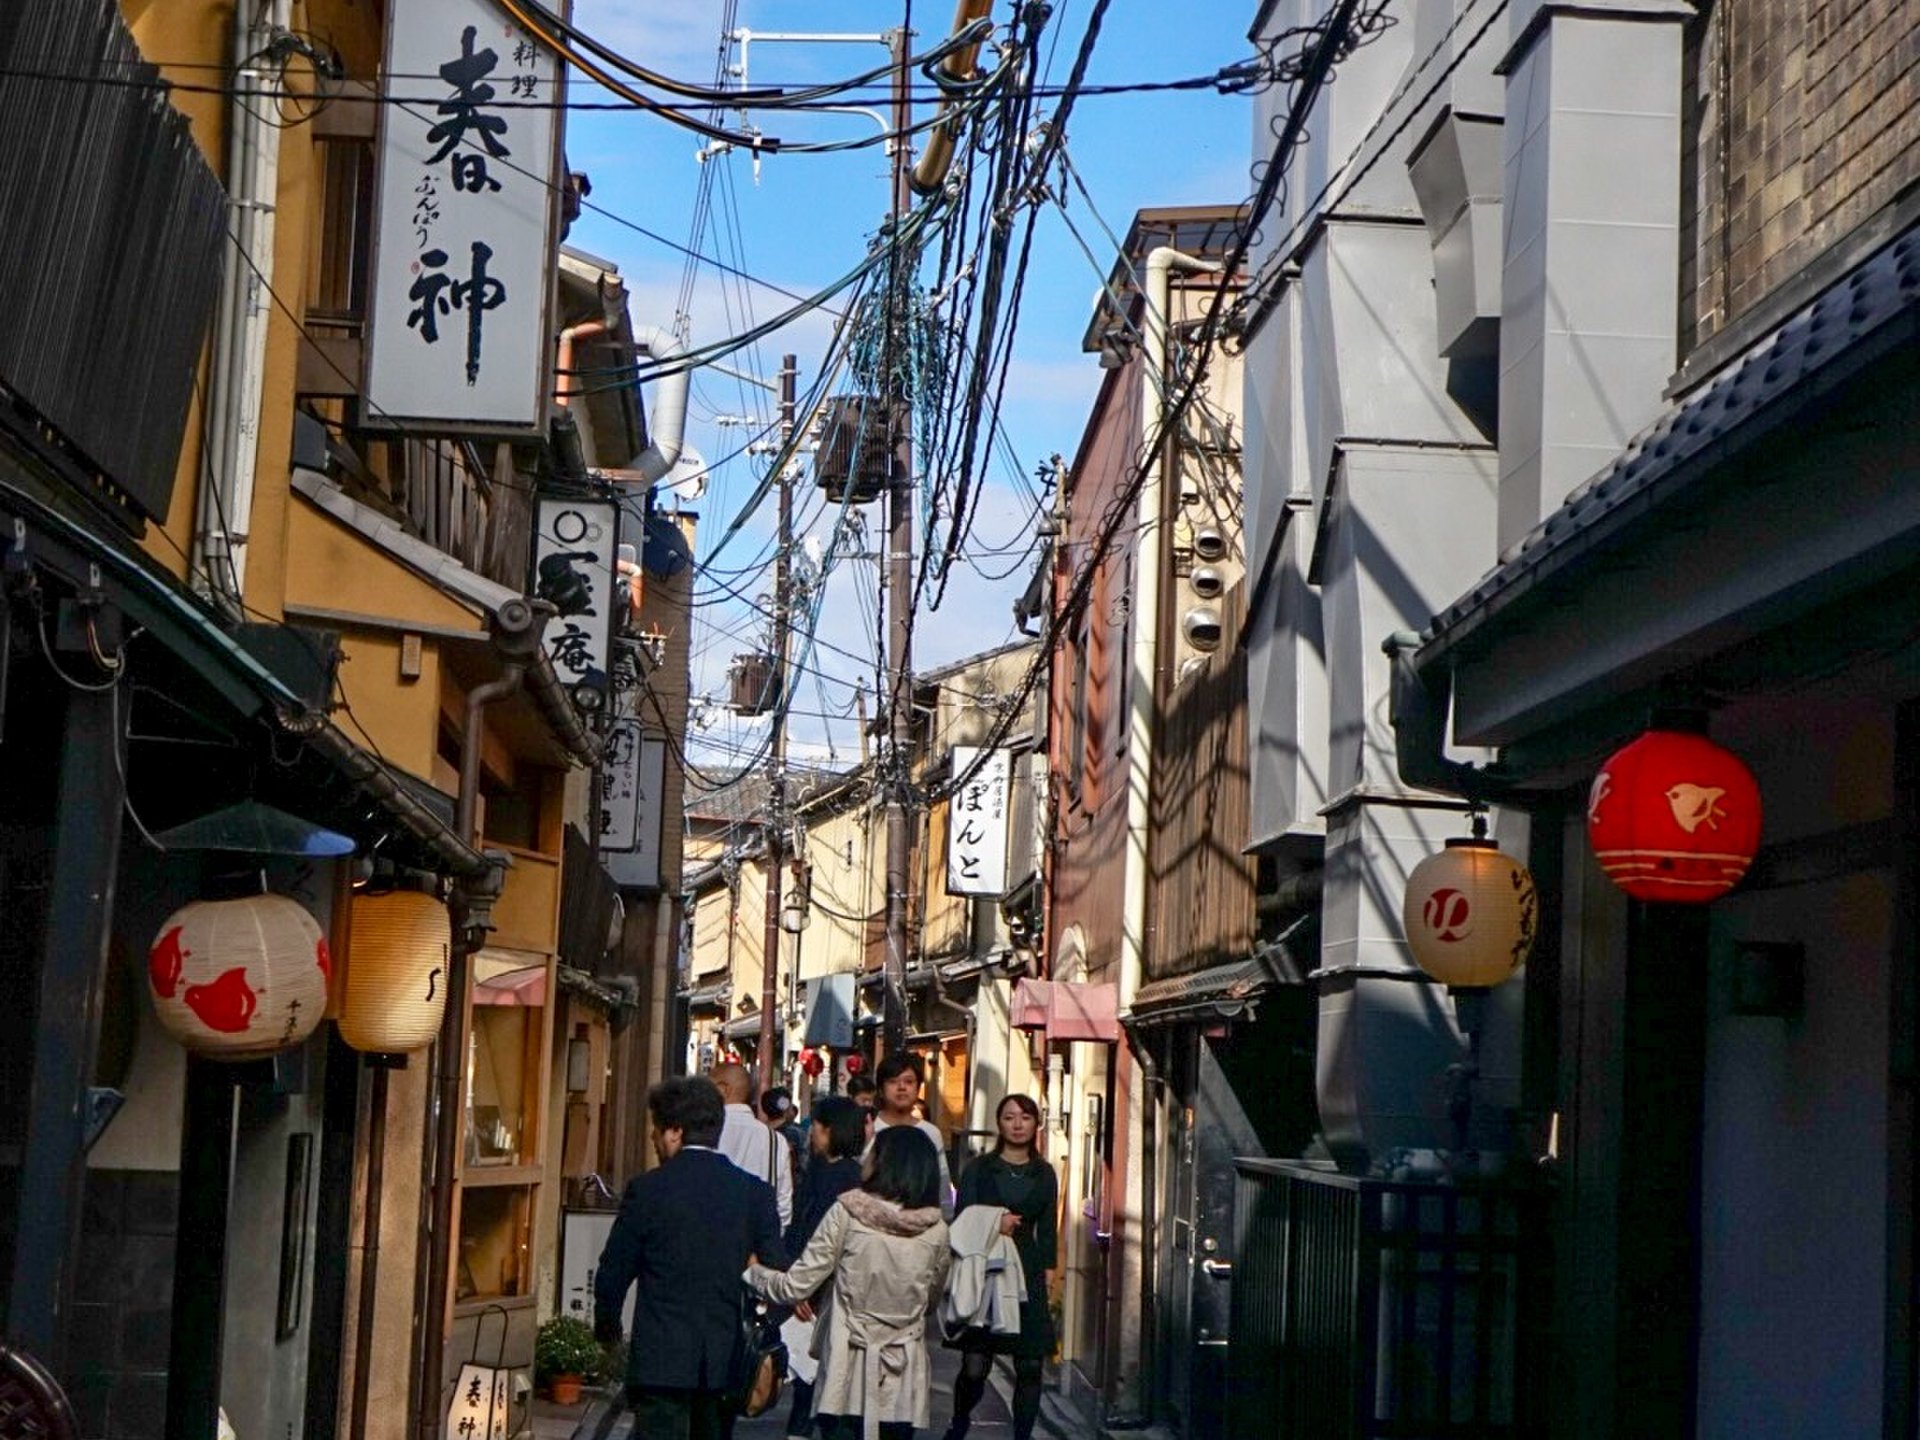 京都フォトジェニックスポット巡り 季節を問わず行きたい美しい京都で写真を楽しむ旅 